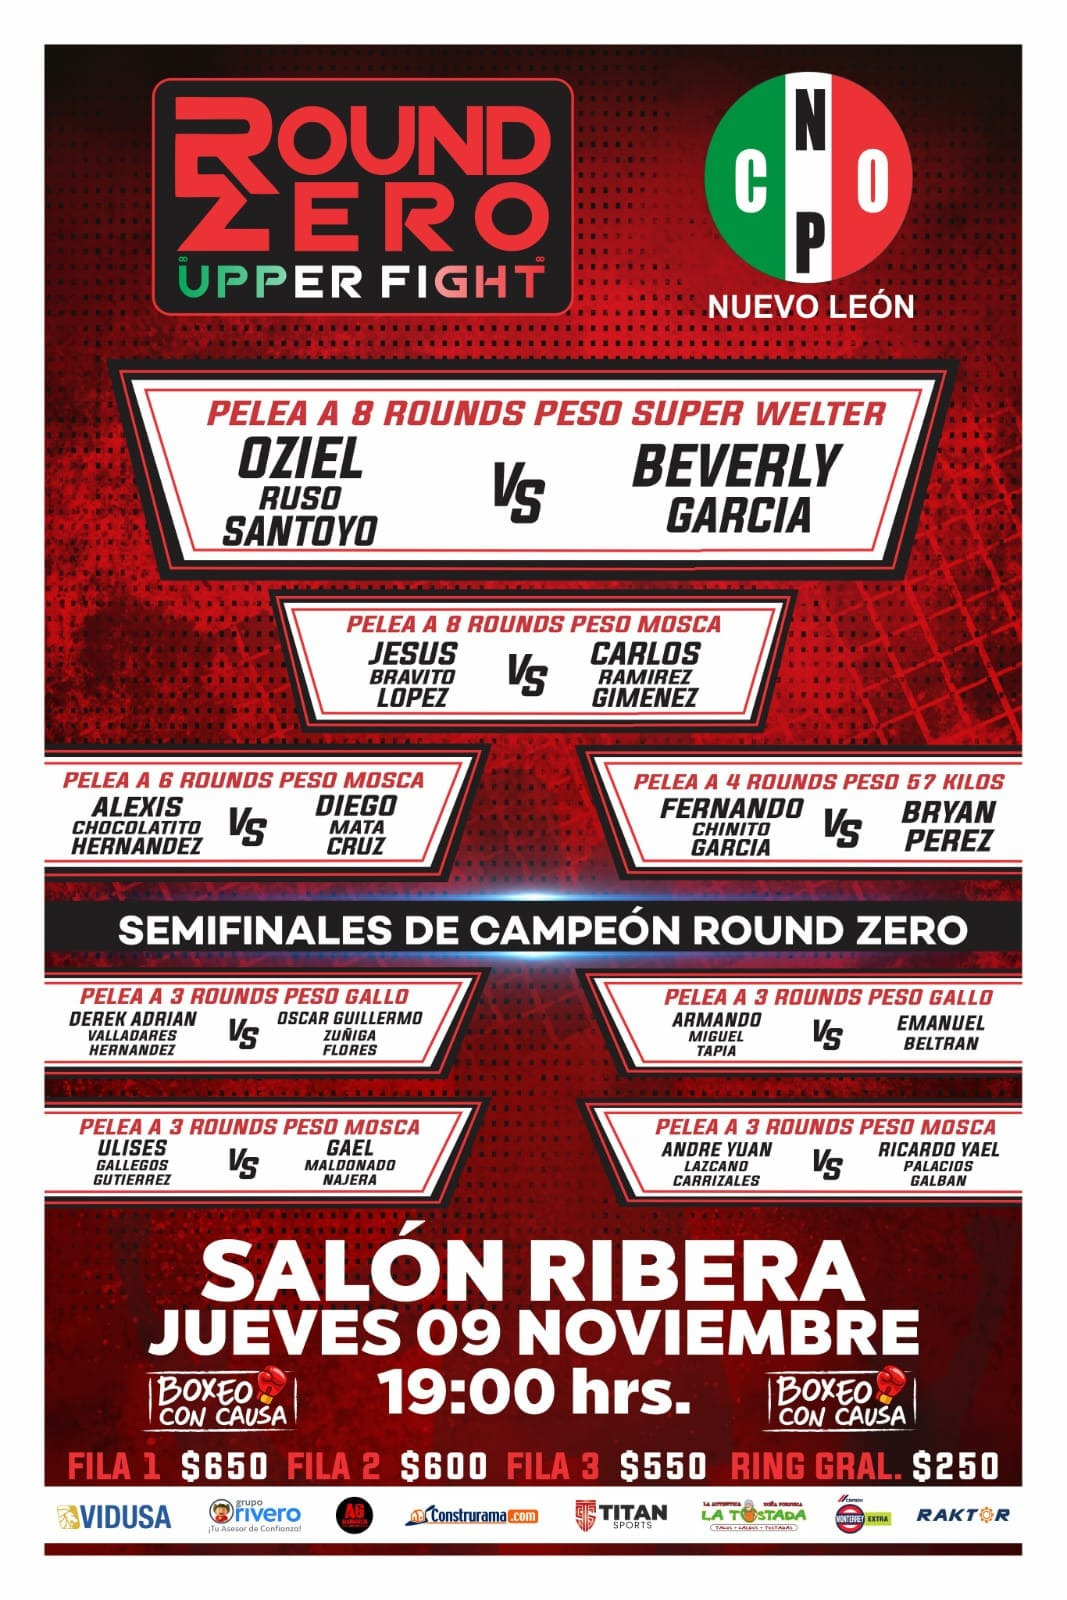 Va “Russo” Santoyo vs Bervely García en combate estelar de Round Zero